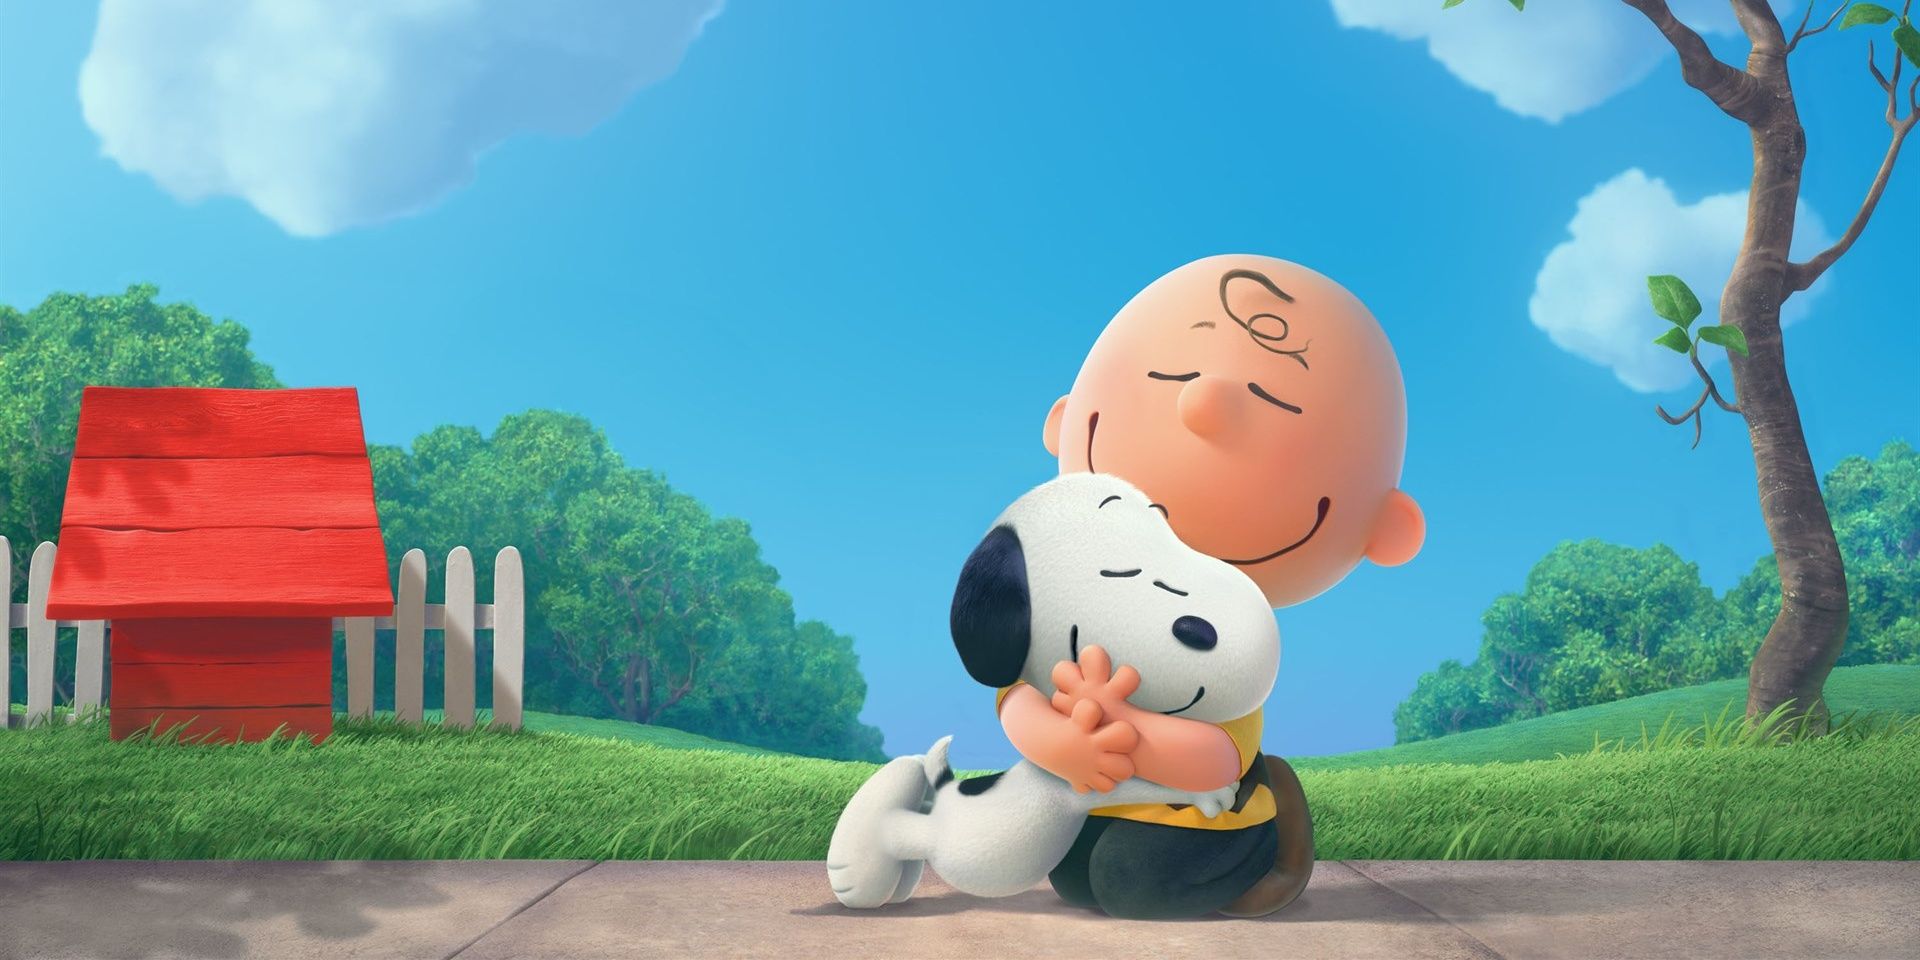 Charlie Brown hugs Snoopy in The Peanuts Movie